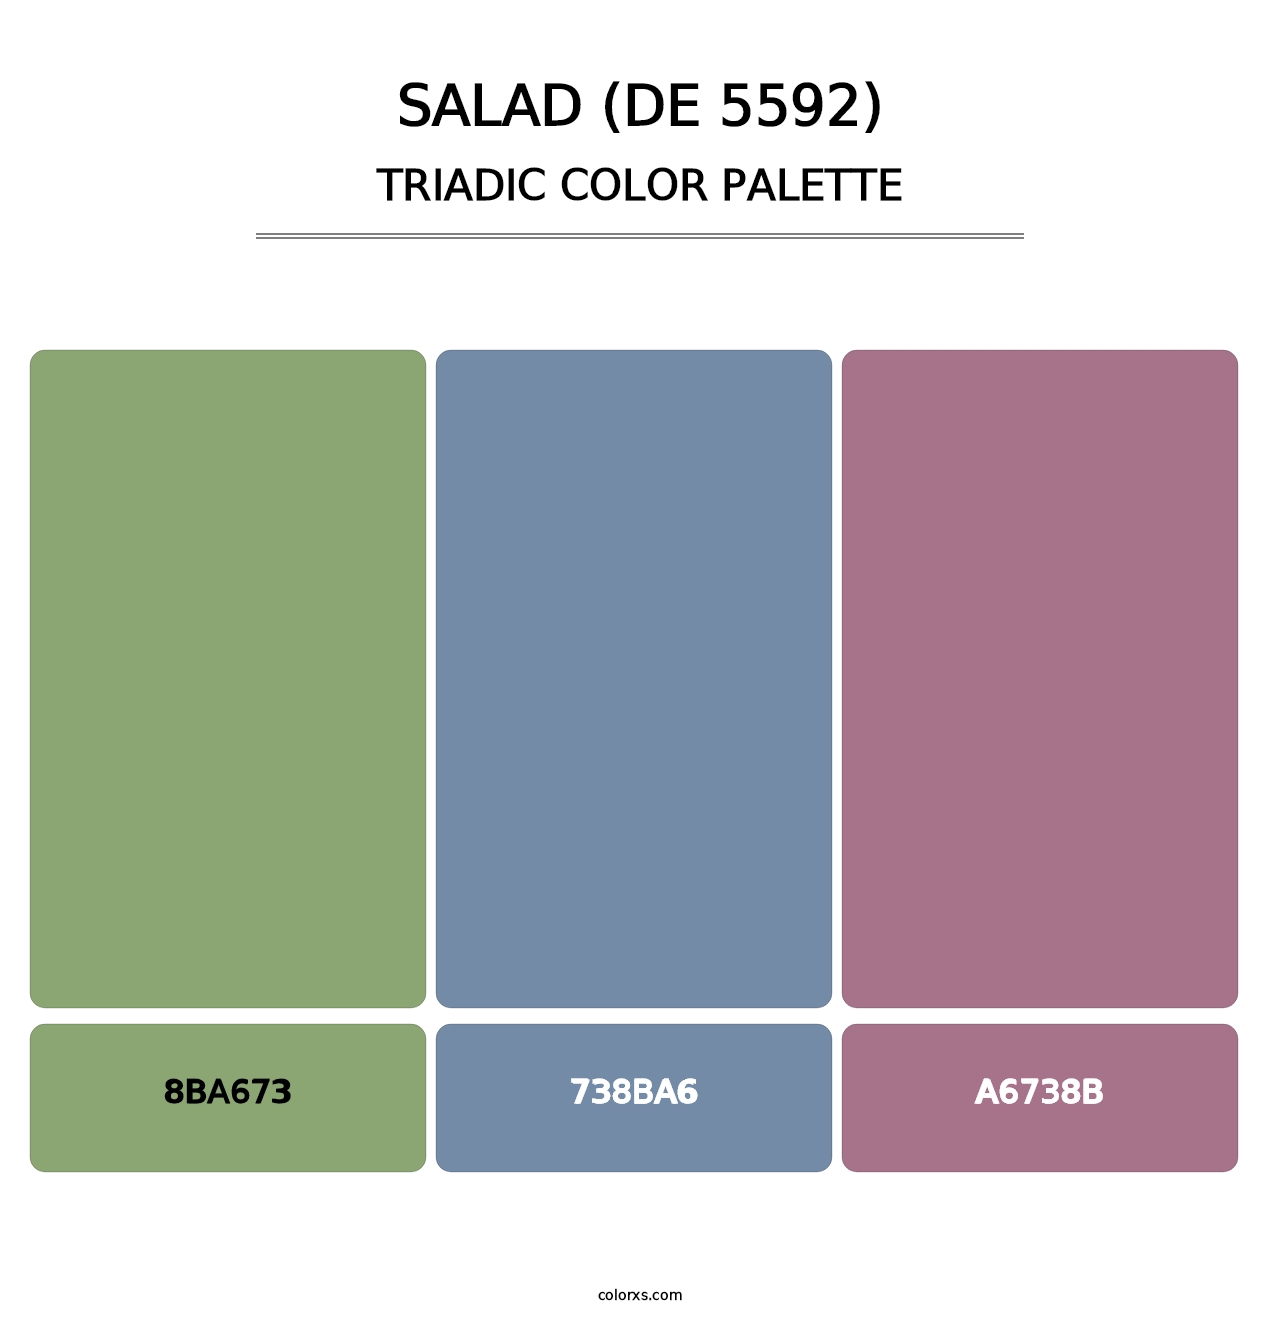 Salad (DE 5592) - Triadic Color Palette